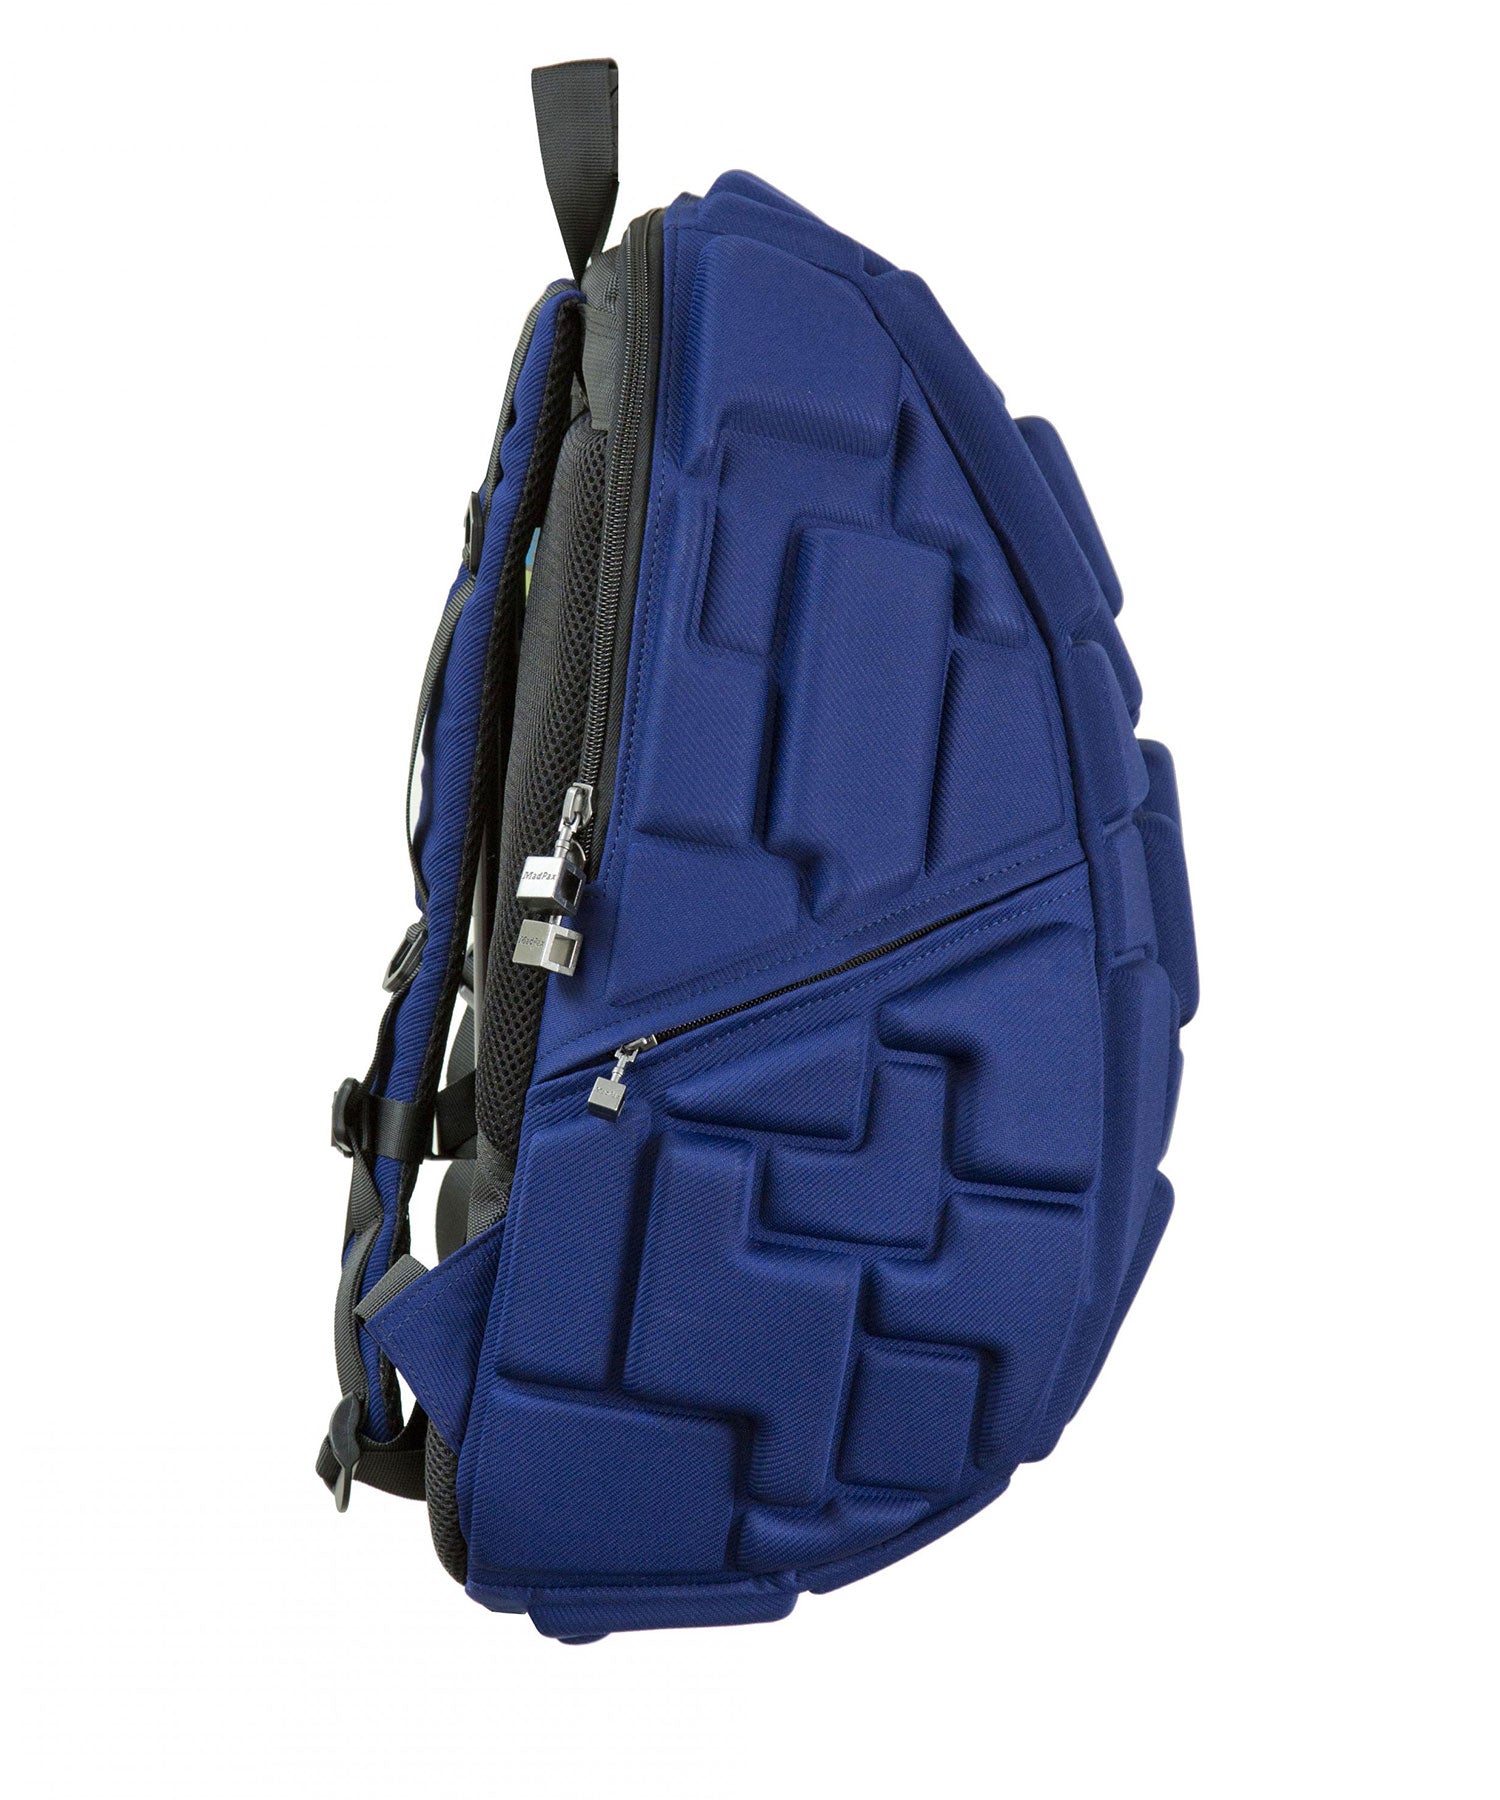 MADPAX BLOK / WILDBLUEYONDER / FULLPACK حقيبة ظهر زرقاء